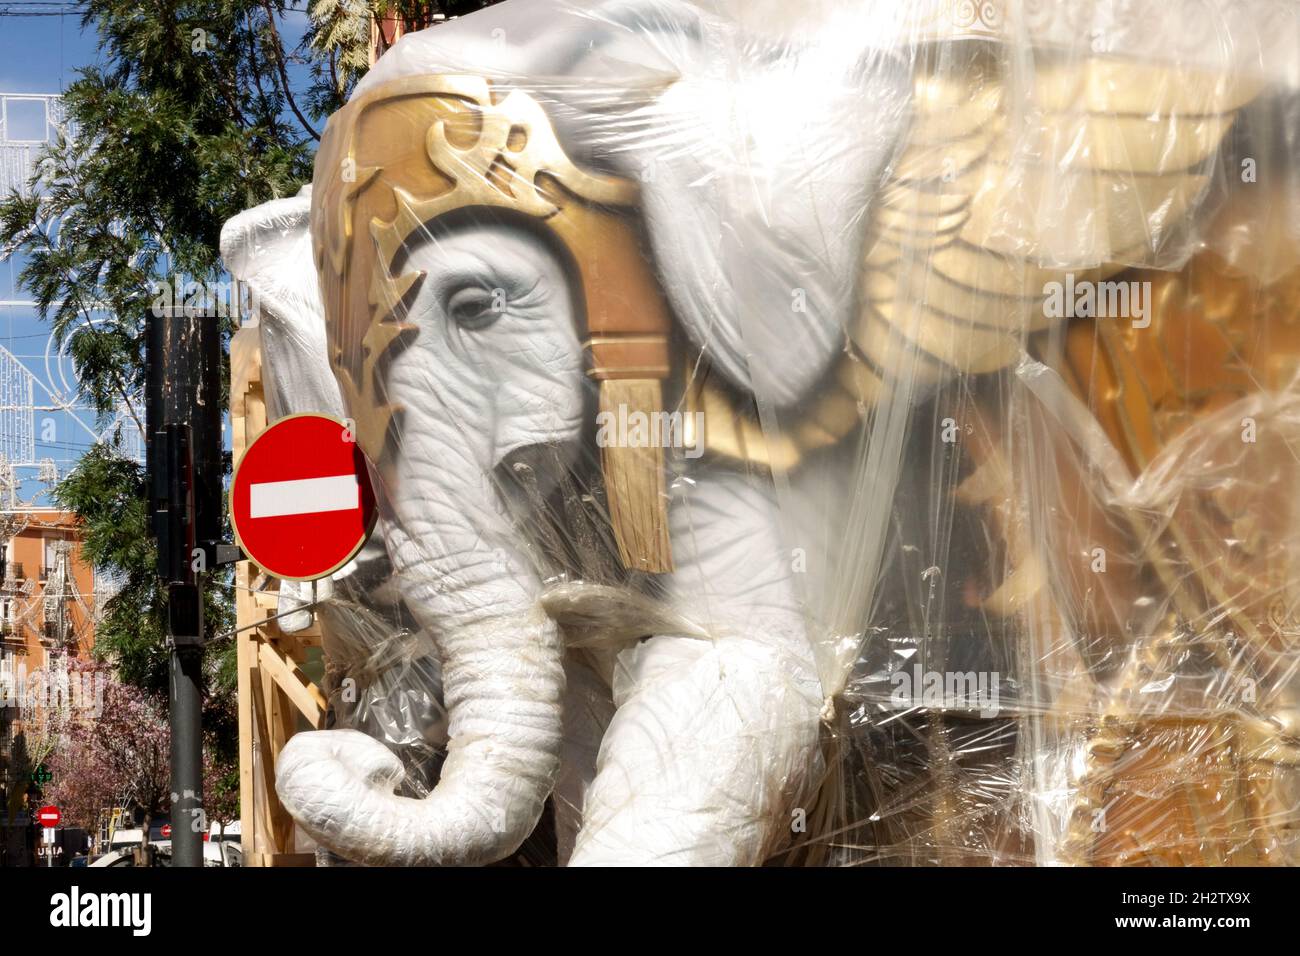 Statue d'éléphant dans le quartier Ruzafa de Valence Fla sur la rue préparation du festival espagnol dans la ville Banque D'Images